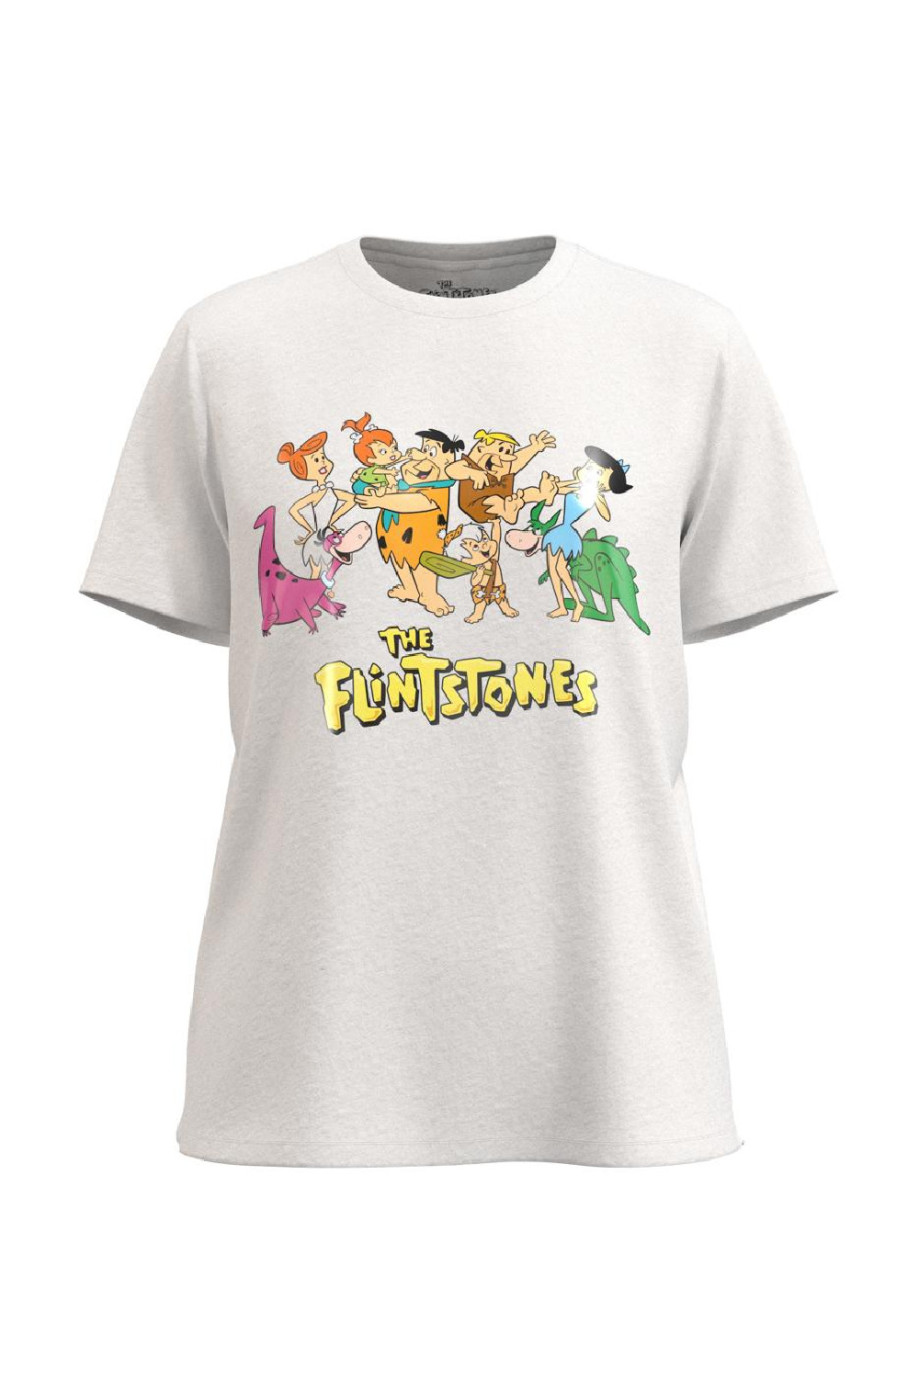 Camiseta manga corta unicolor en algodón con diseño de Los Picapiedra